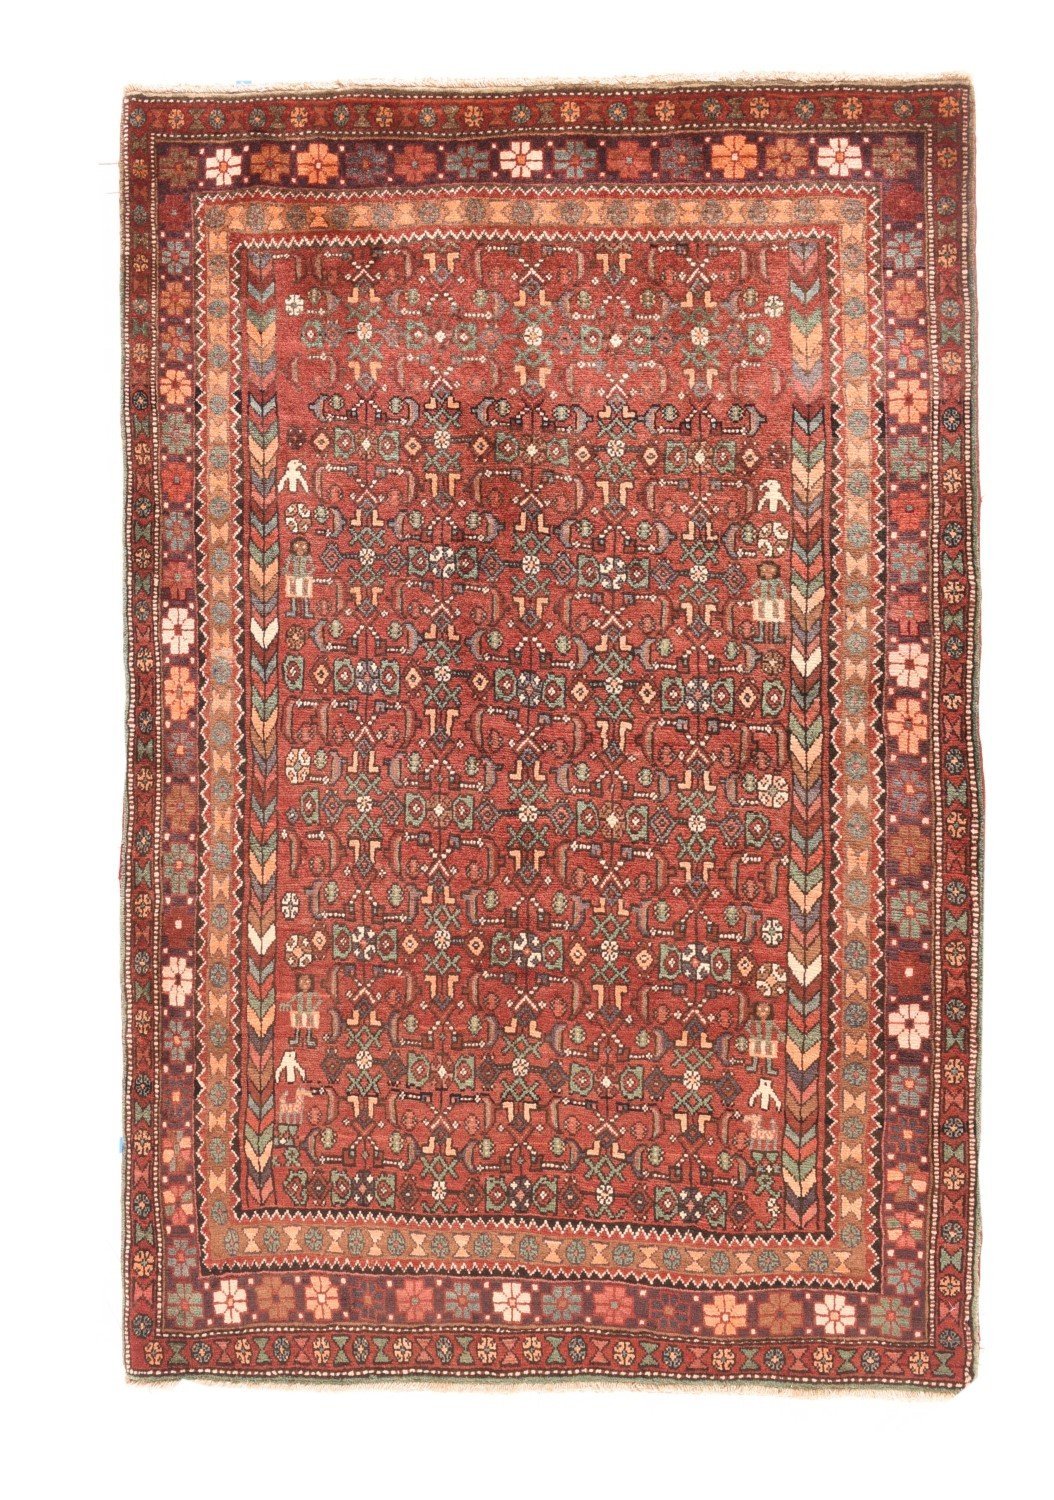 Fine Semi-Antique Persian Gholtogh, Size 4'1" X 6'4"